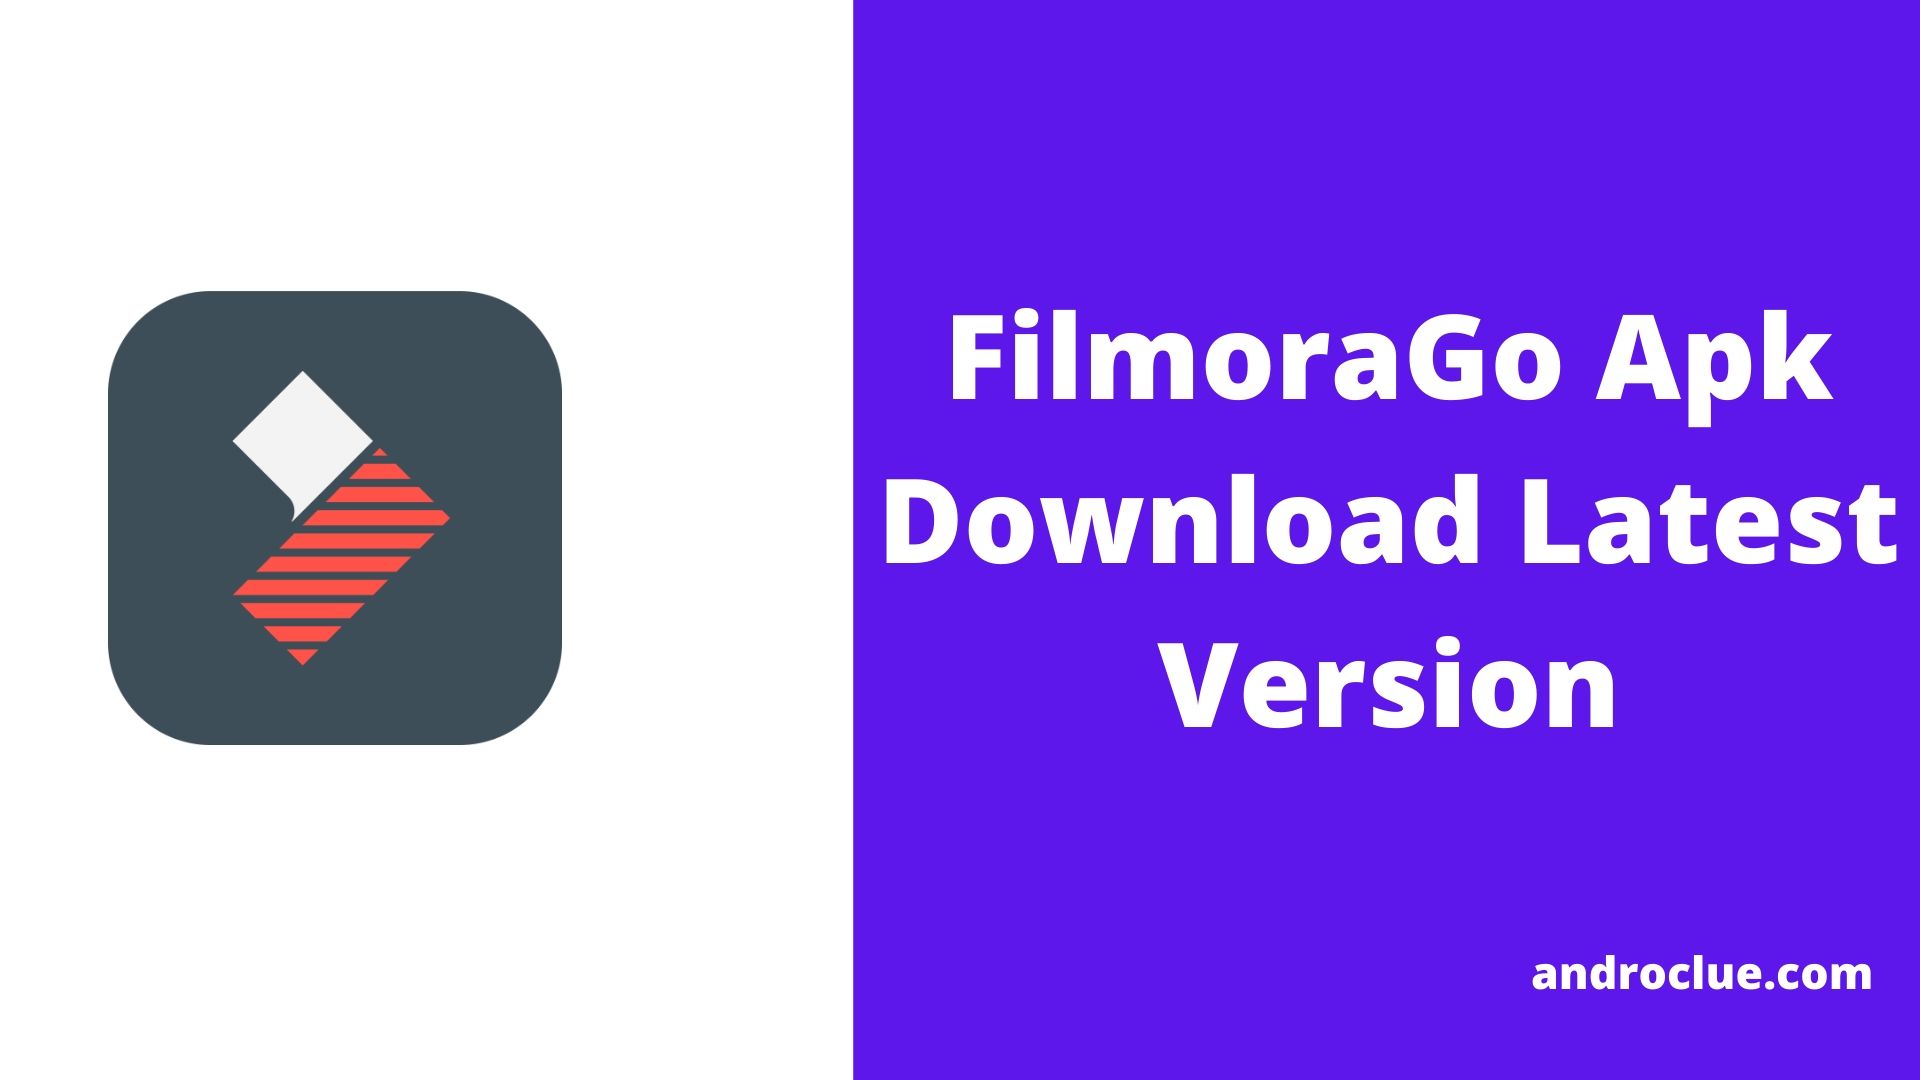 FilmoraGo Apk Download da versão mais recente para dispositivos Android (2020)